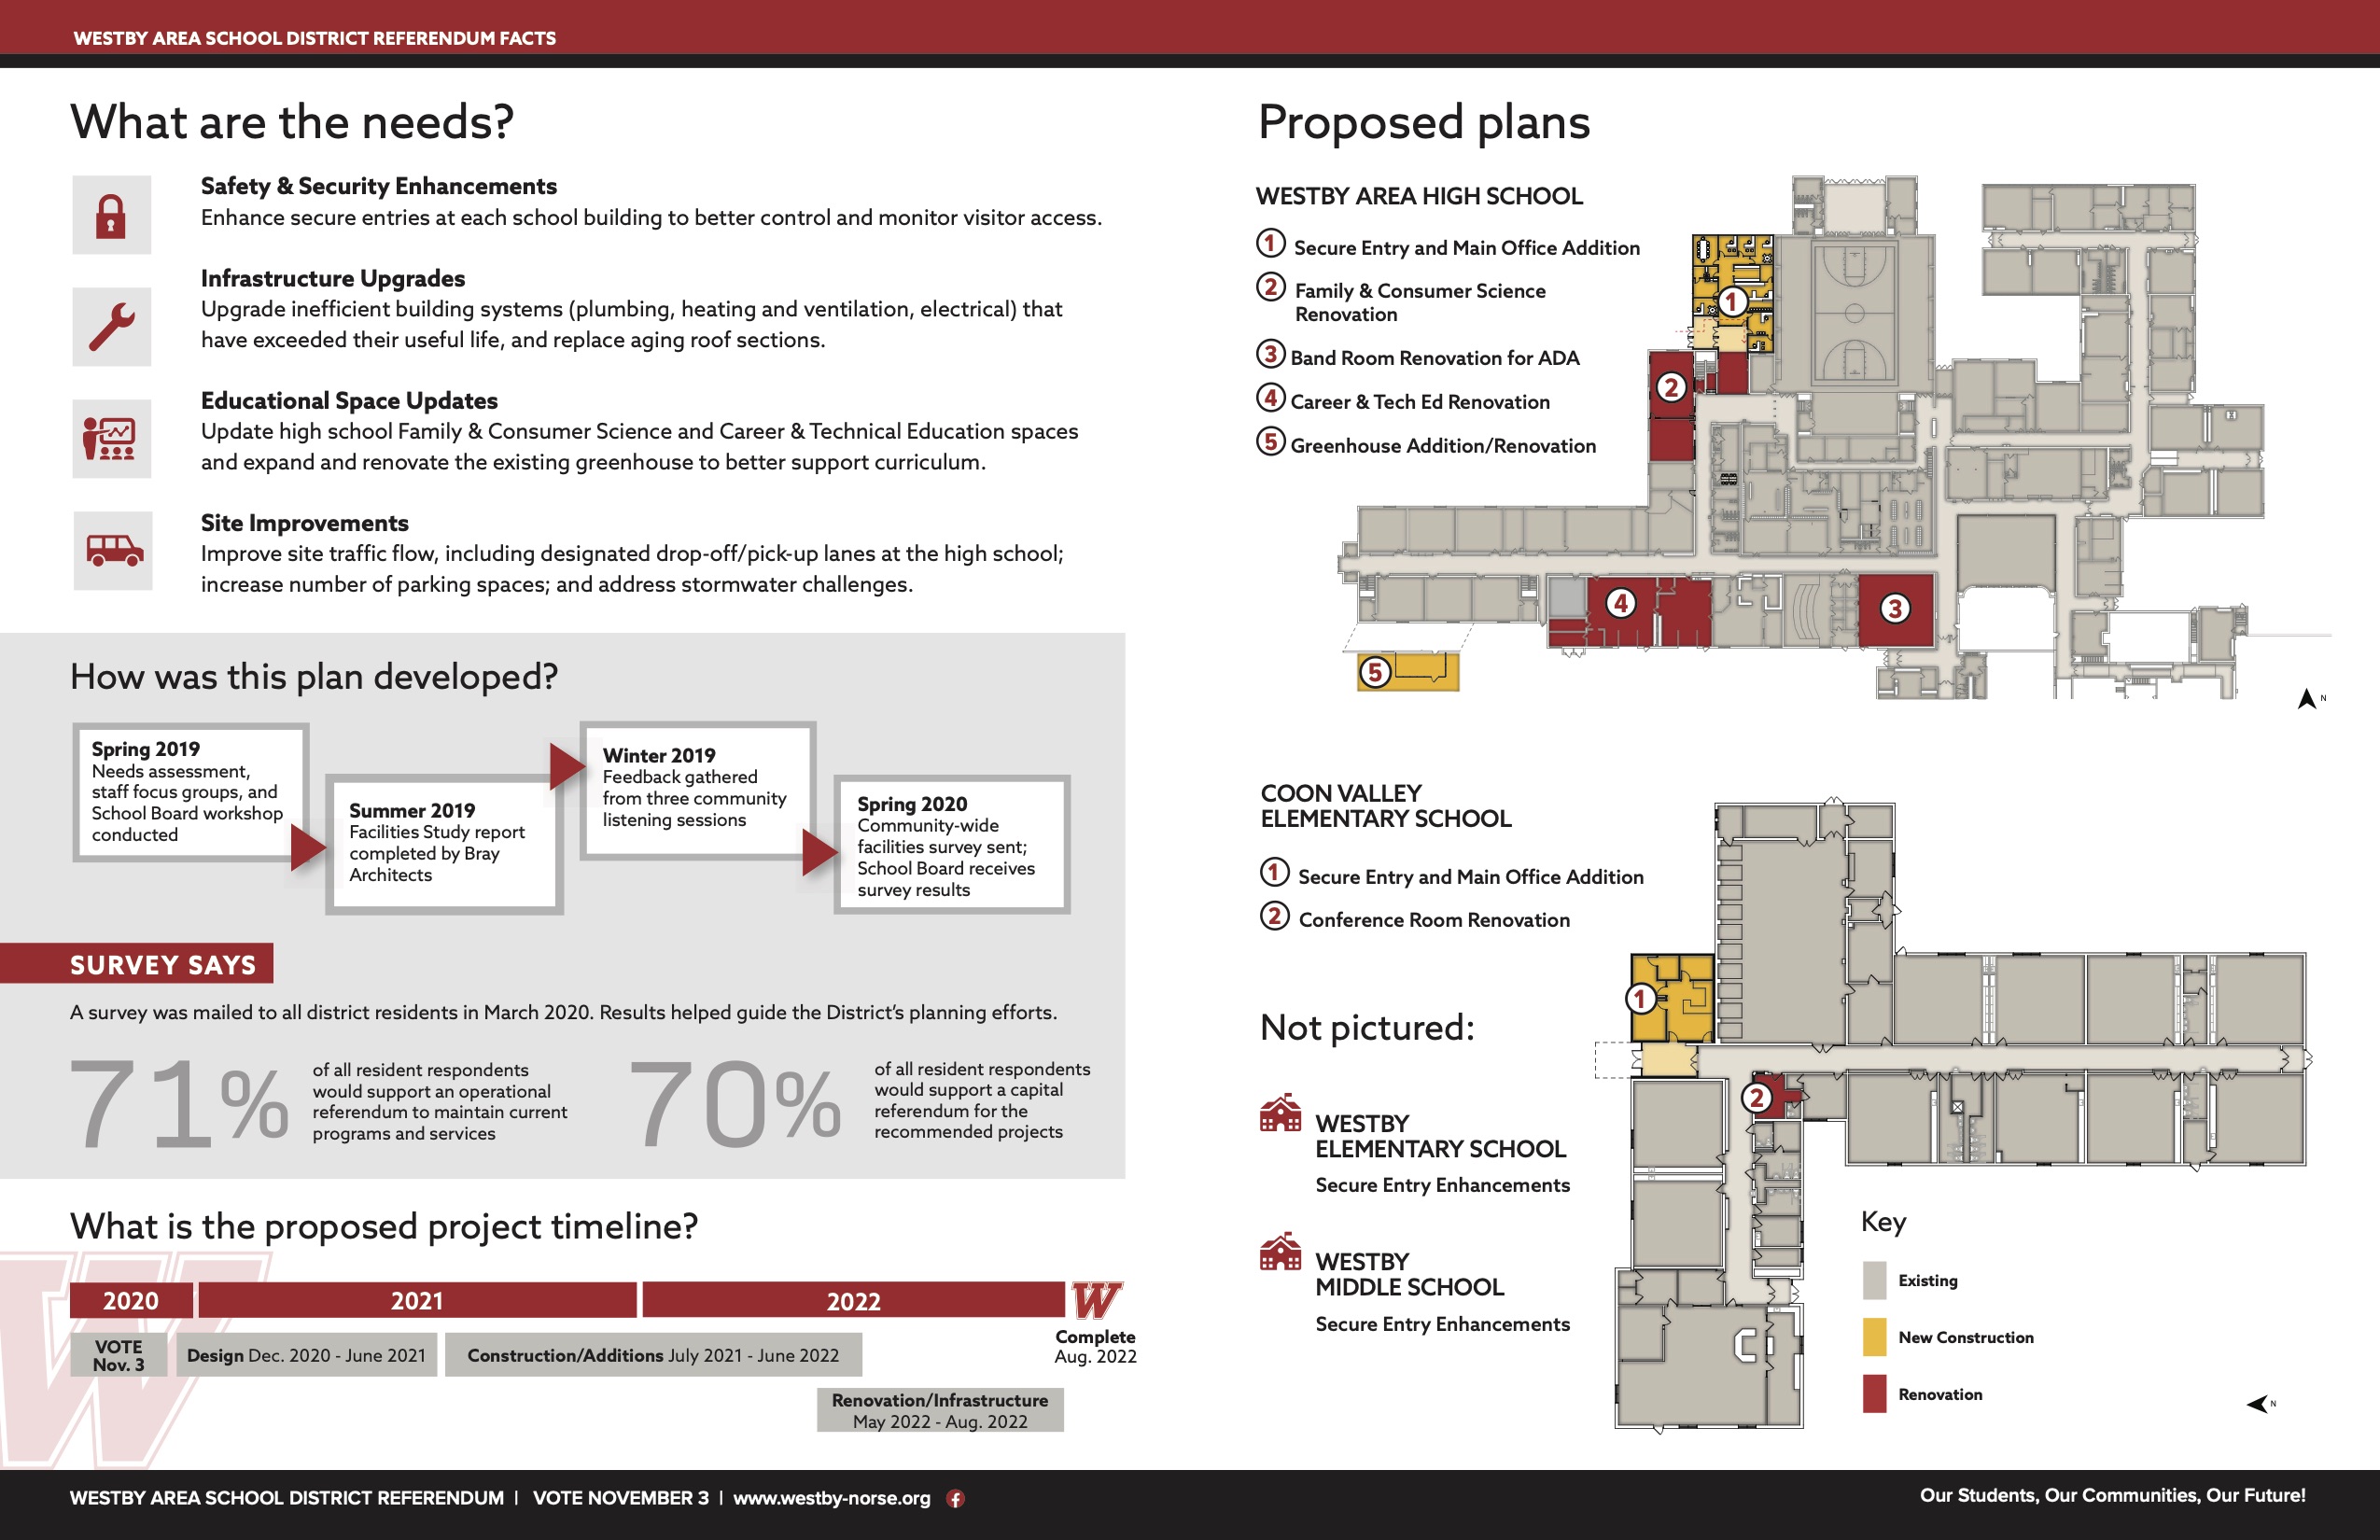 PDF detailing conceptual plans for WASD Referendum